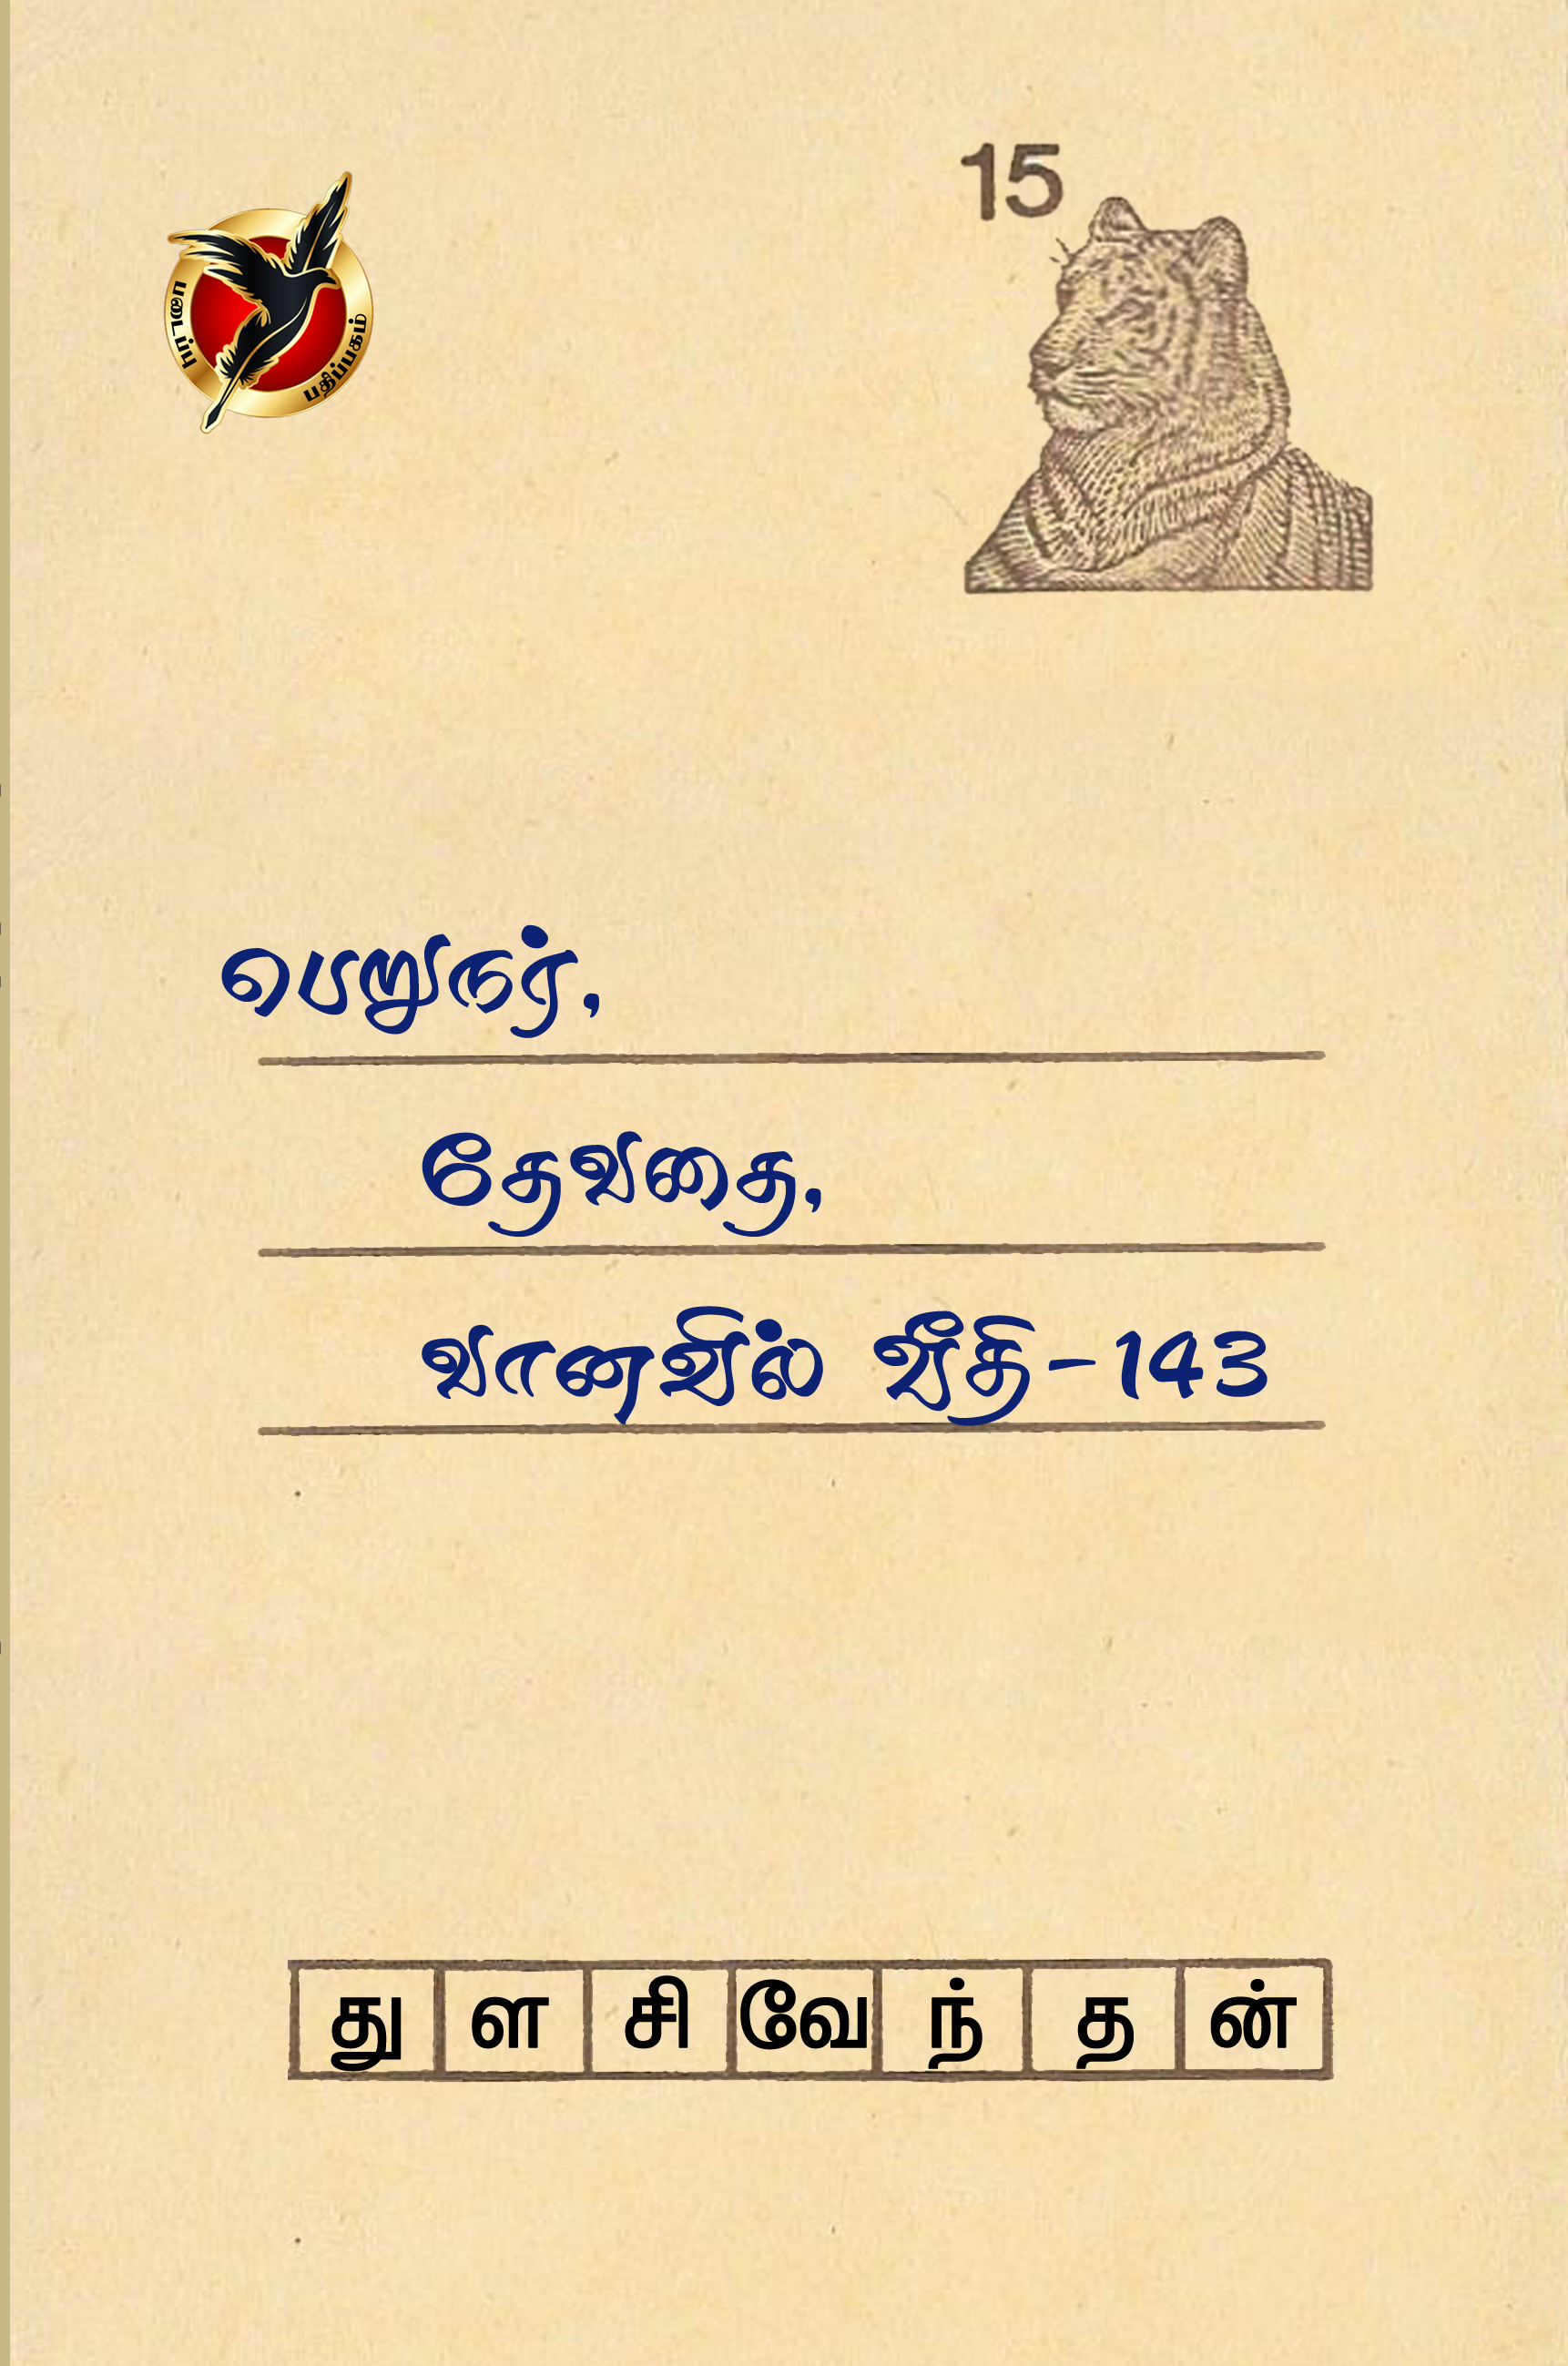 பெறுநர், தேவதை, வானவில் வீதி - 143